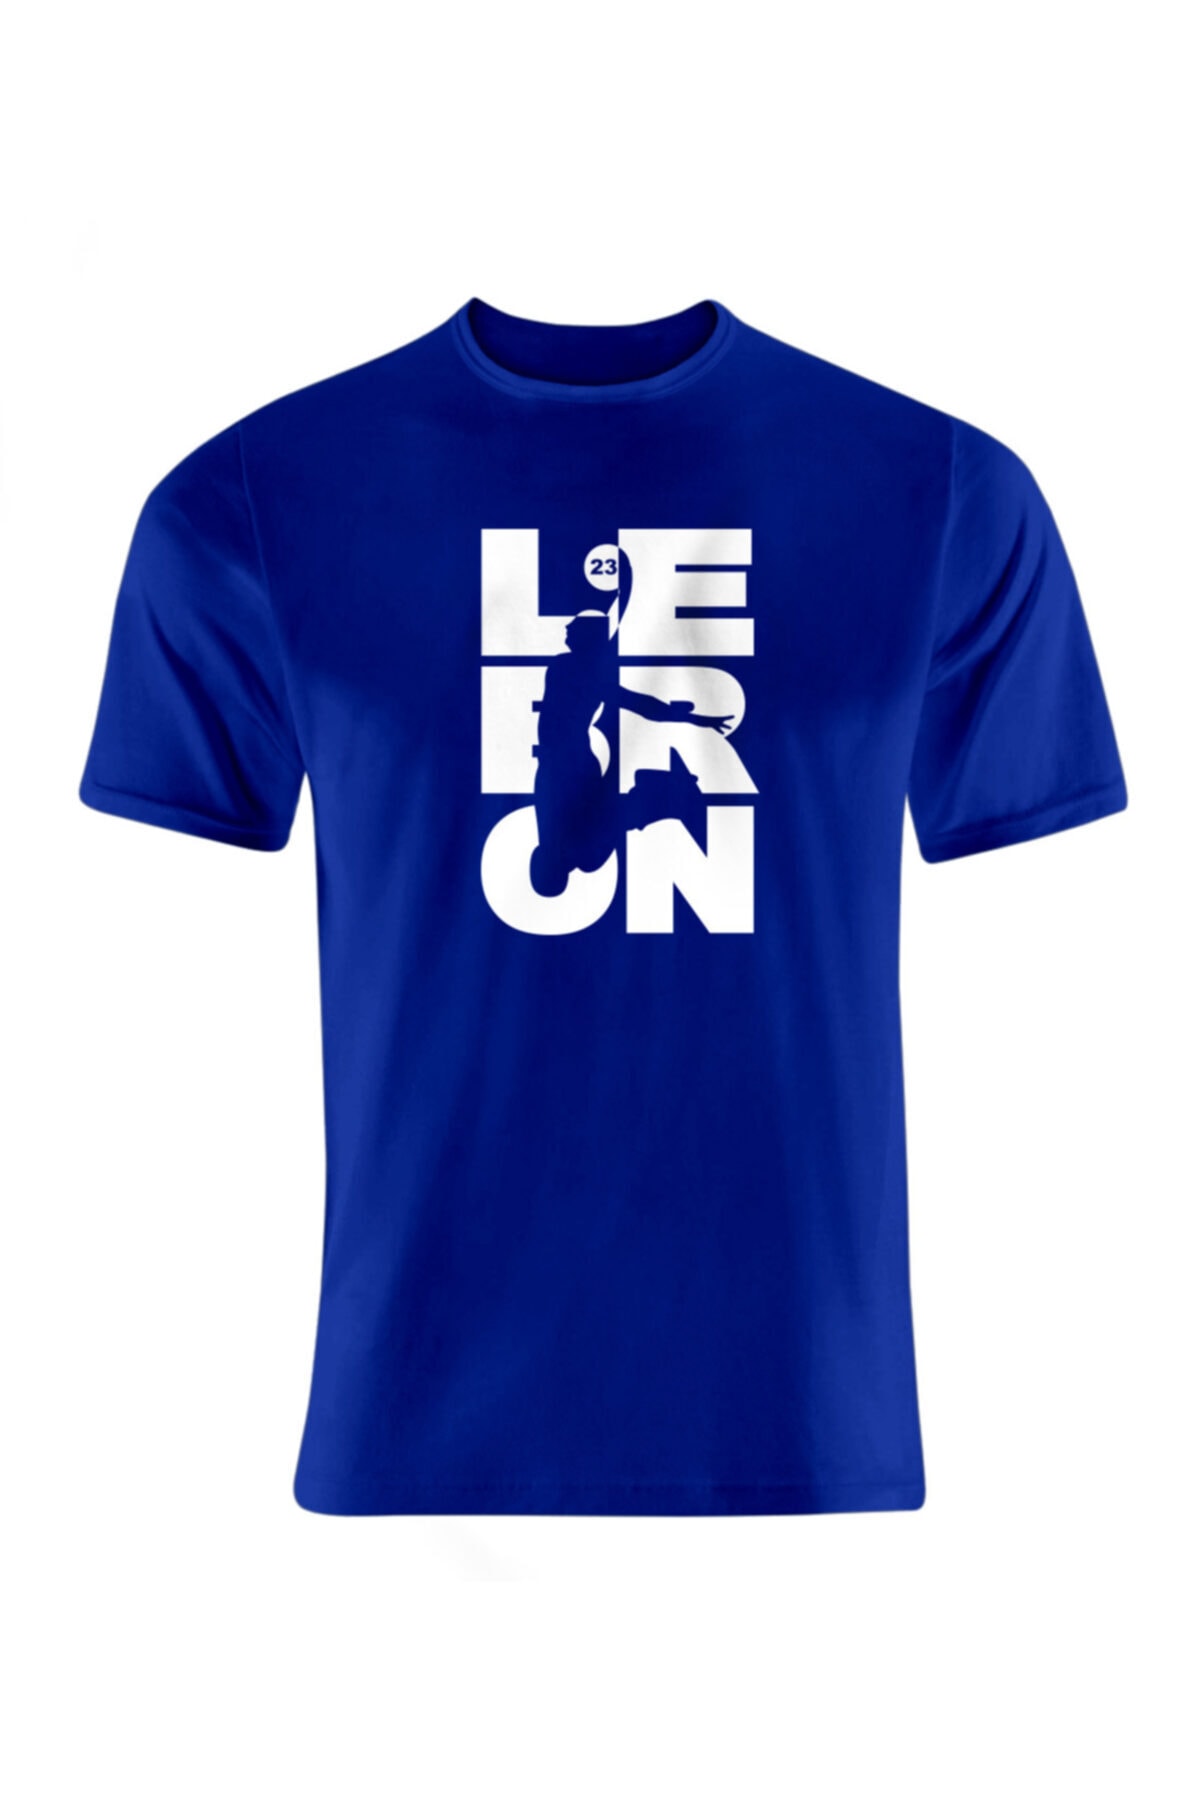 Unisex Mavi Lebron James Baskılı T-shirt